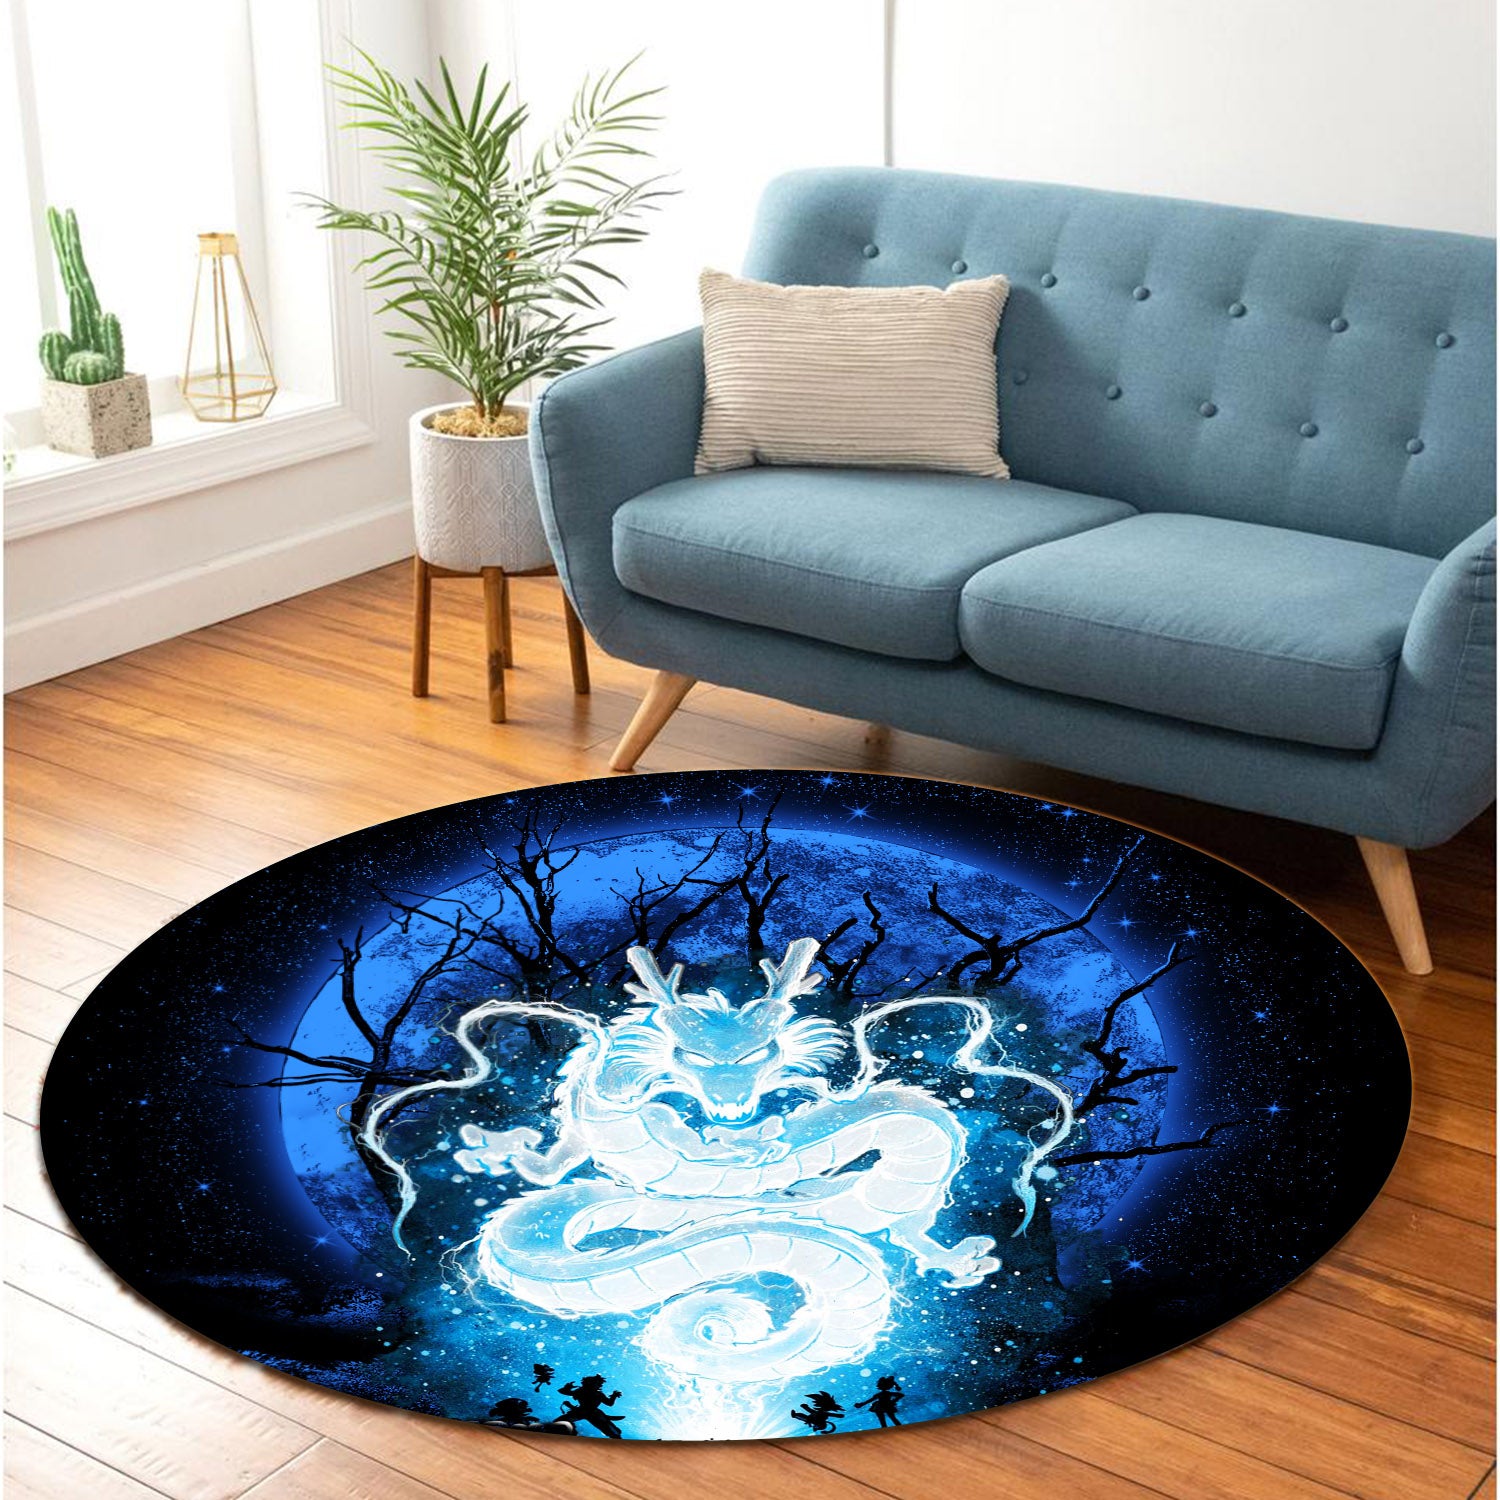 Shenron Dragon Ball Moonlight Round Carpet Rug Bedroom Livingroom Home Decor Nearkii